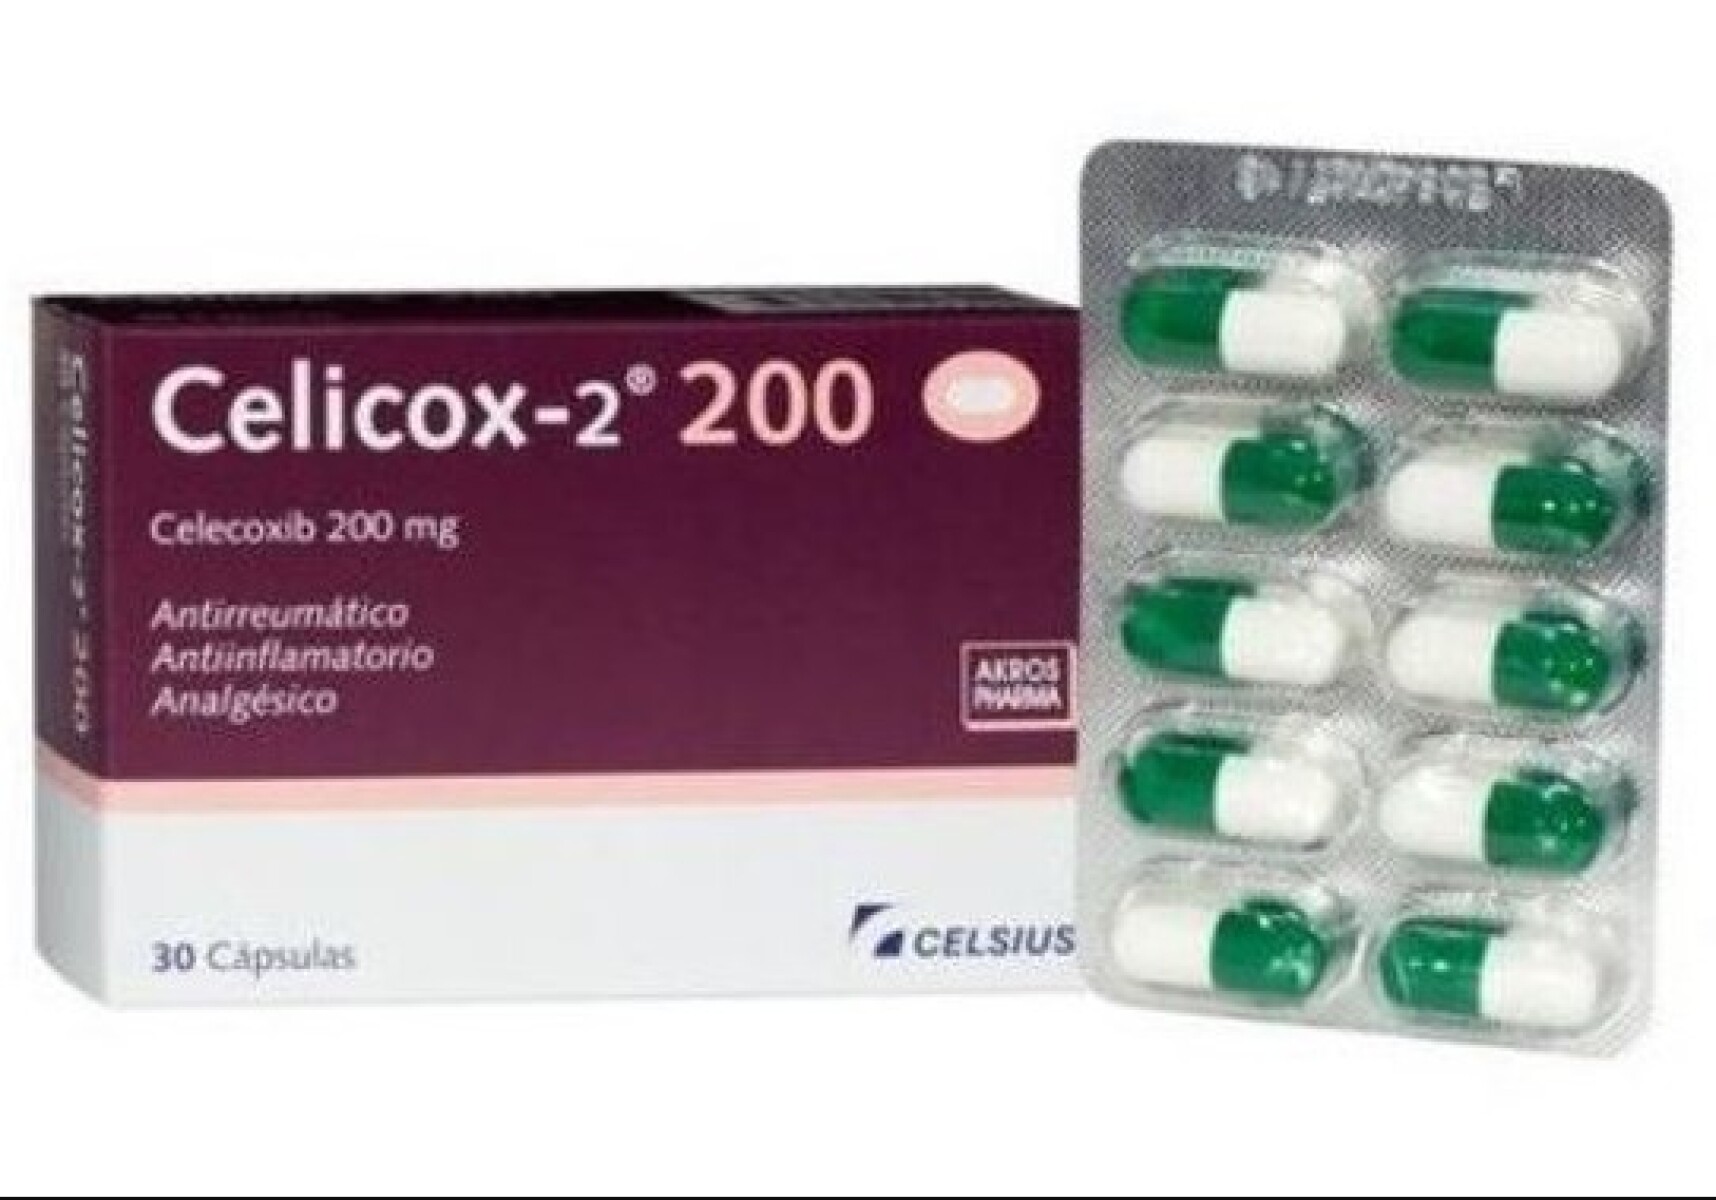 Celicox-2 200Mg 